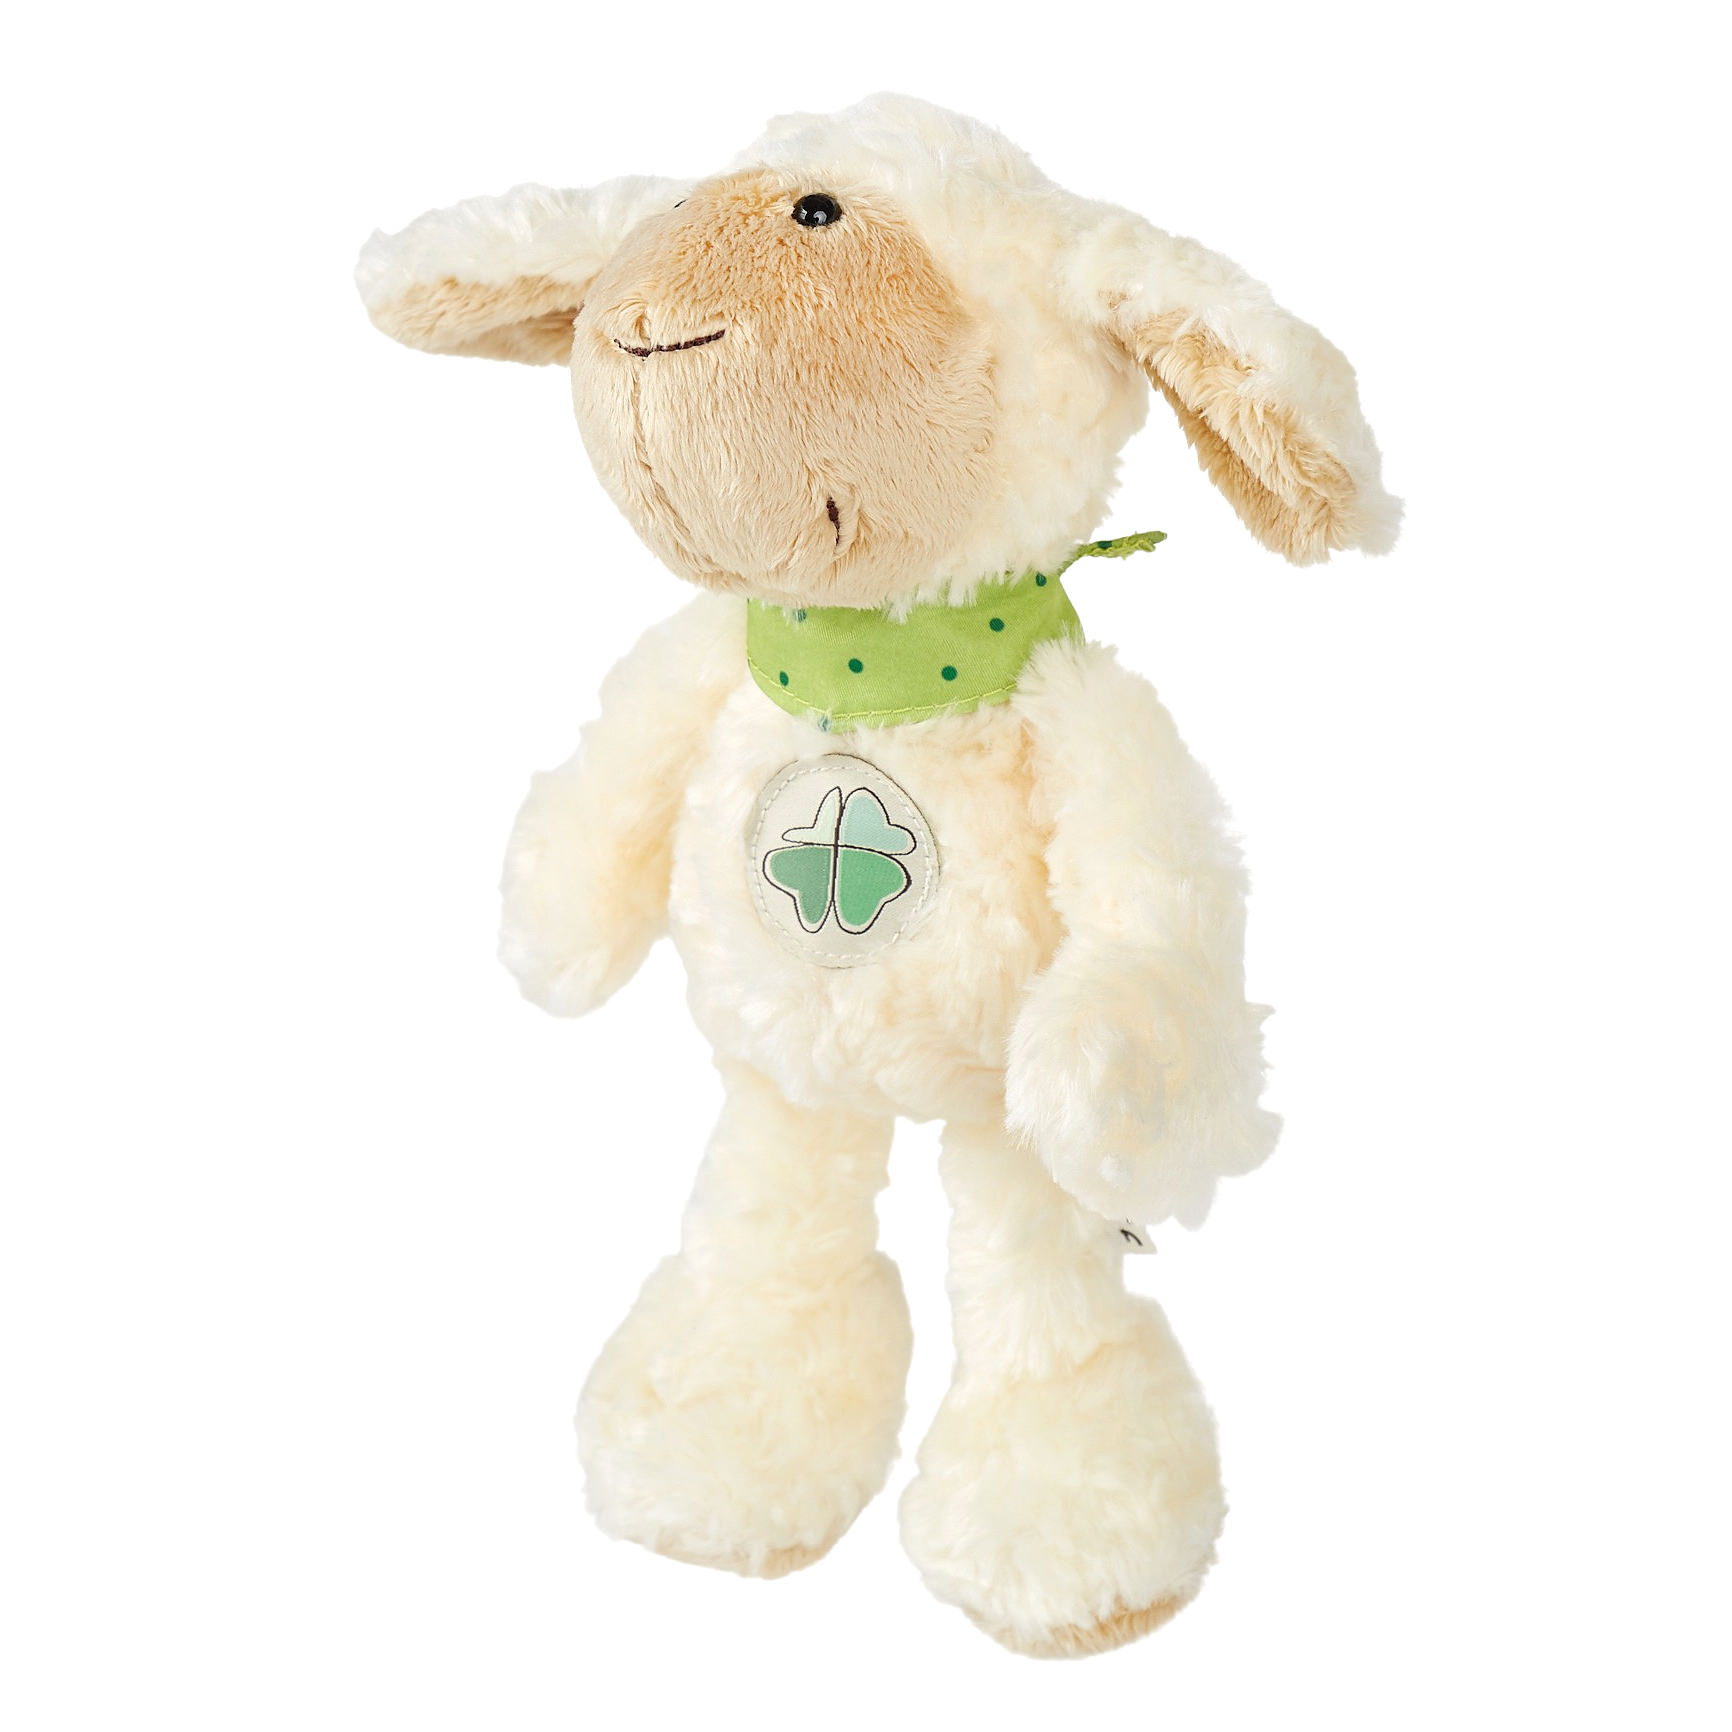 Fluffy plush sheep, Care-for-Rare health foundation